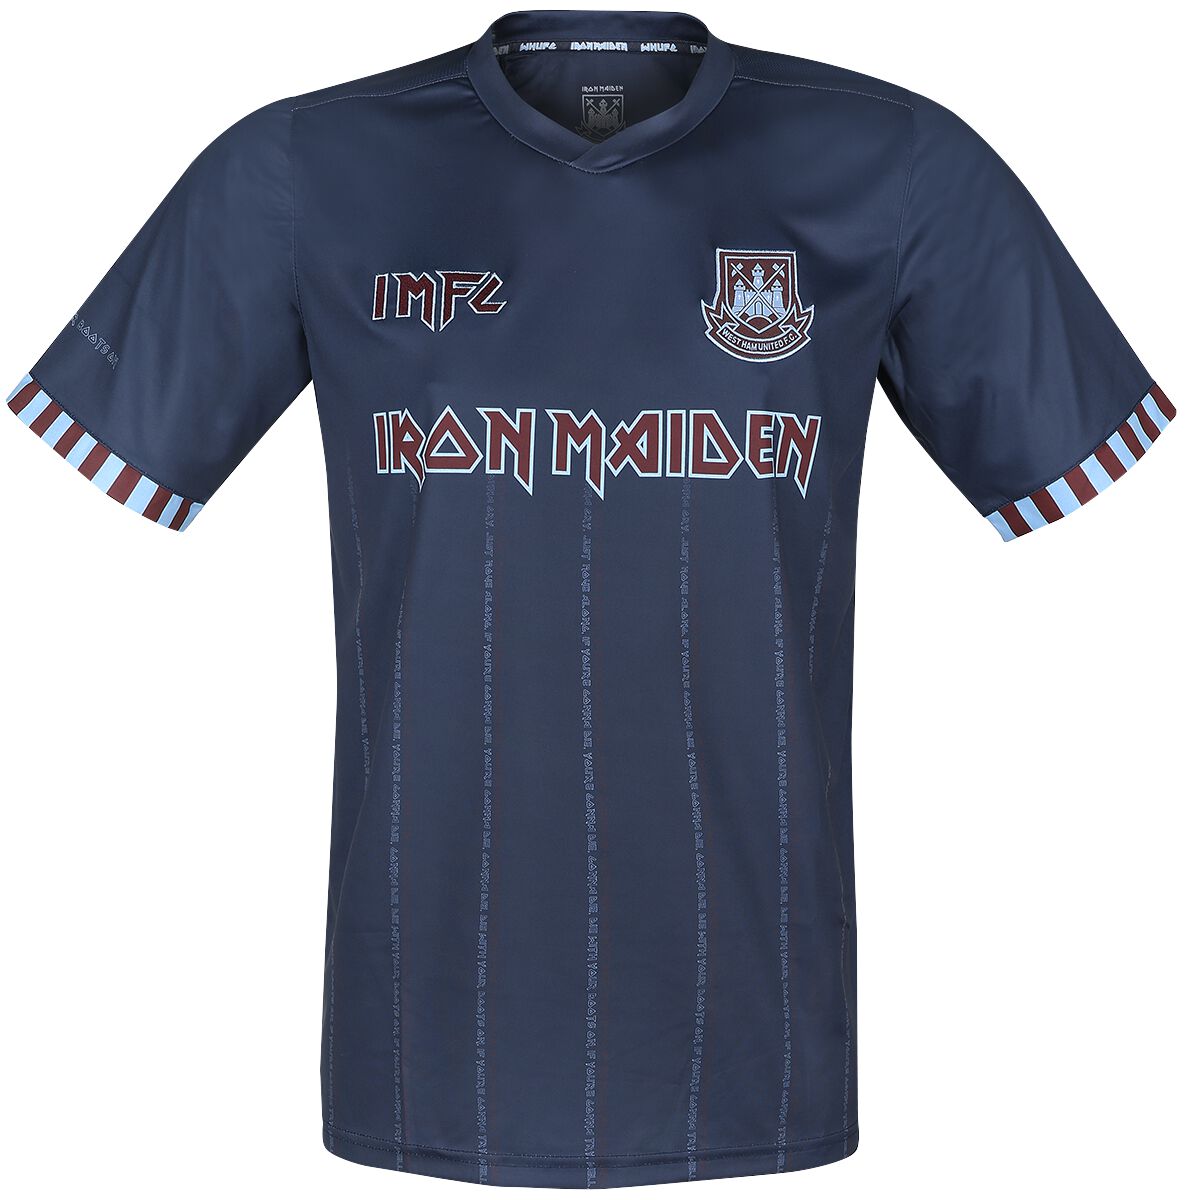 Iron Maiden Trikot - IMFC West Ham Jersey - S - Größe S - blau  - Lizenziertes Merchandise!